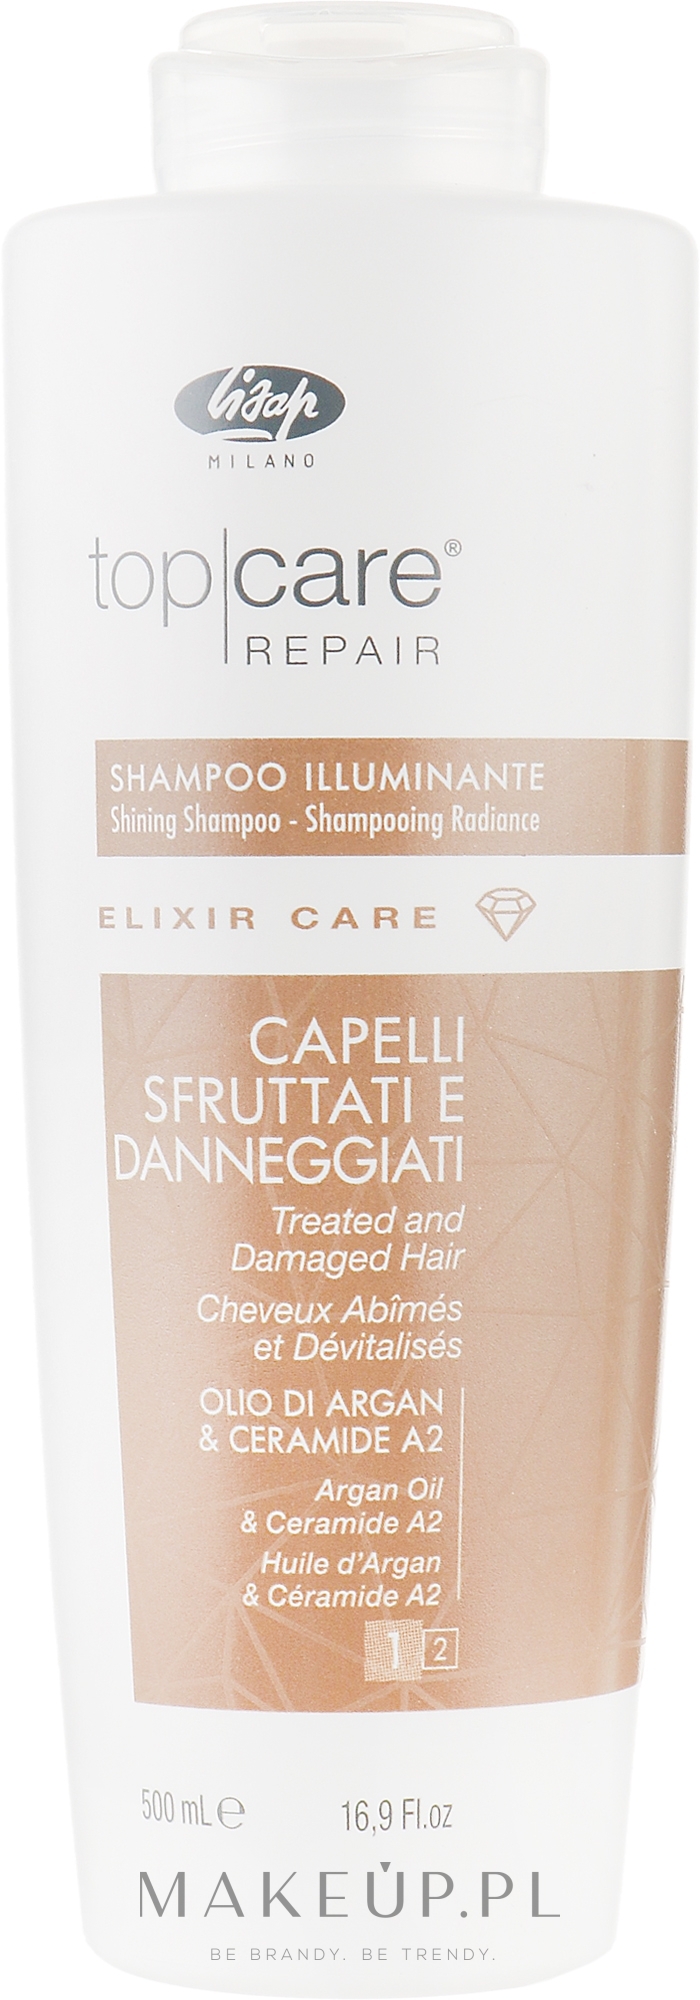 Rozświetlający szampon do włosów - Lisap Top Care Repair Elixir Care Shining Shampoo — Zdjęcie 500 ml